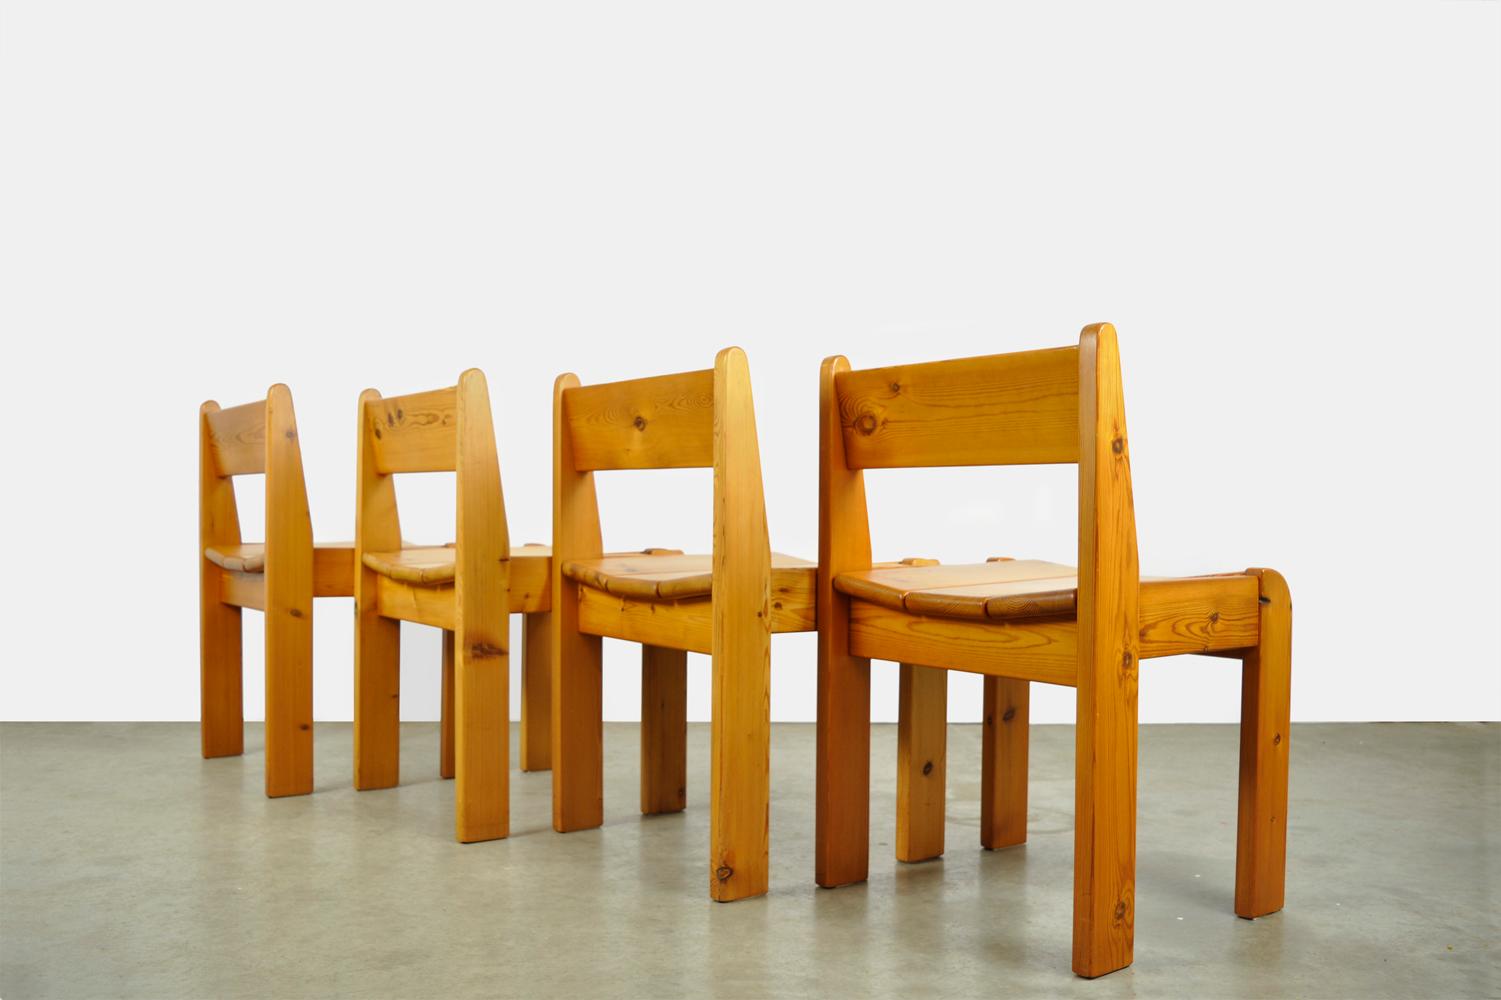 Schöne Details an Rahmen und Sitz.

Brutalistische Esstischstühle aus Holz, entworfen von Ate van Apeldoorn und hergestellt von Houtwerk Hattem, 1970er Jahre. 
Schwere Esstischstühle aus massivem Kiefernholz.